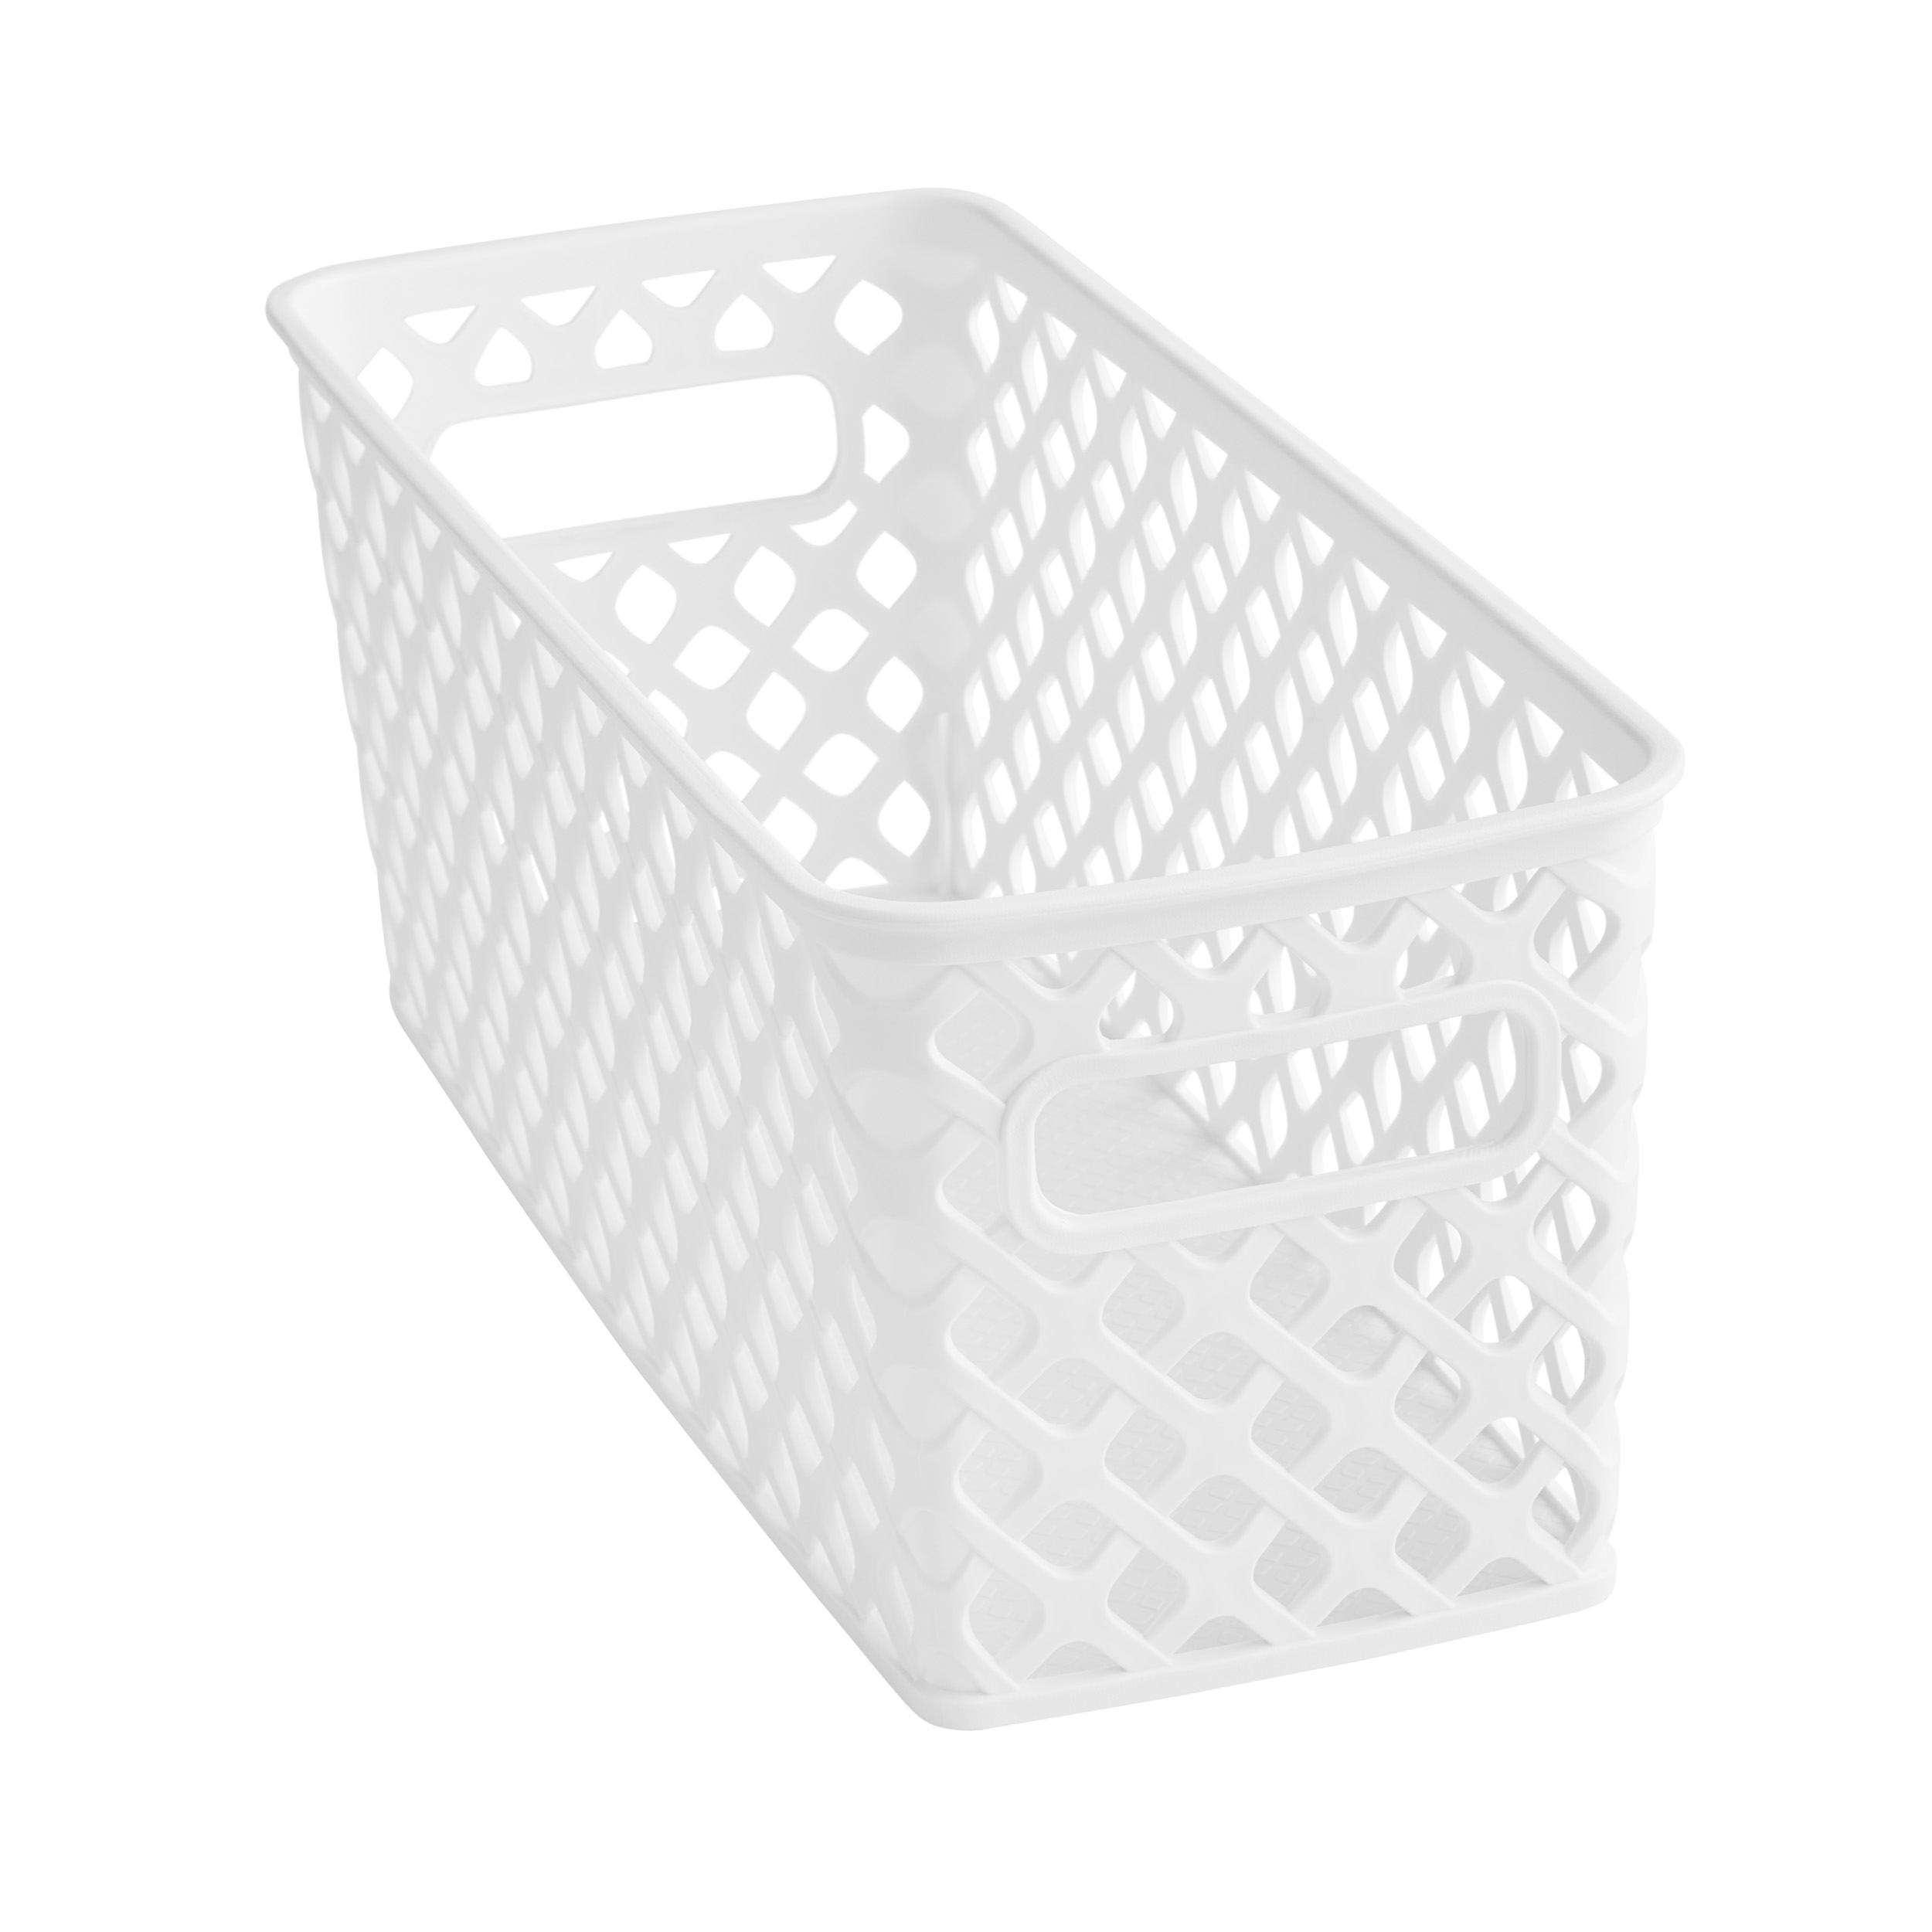 Mainstays Narrow White Decorative Storage Basket - image 3 of 5